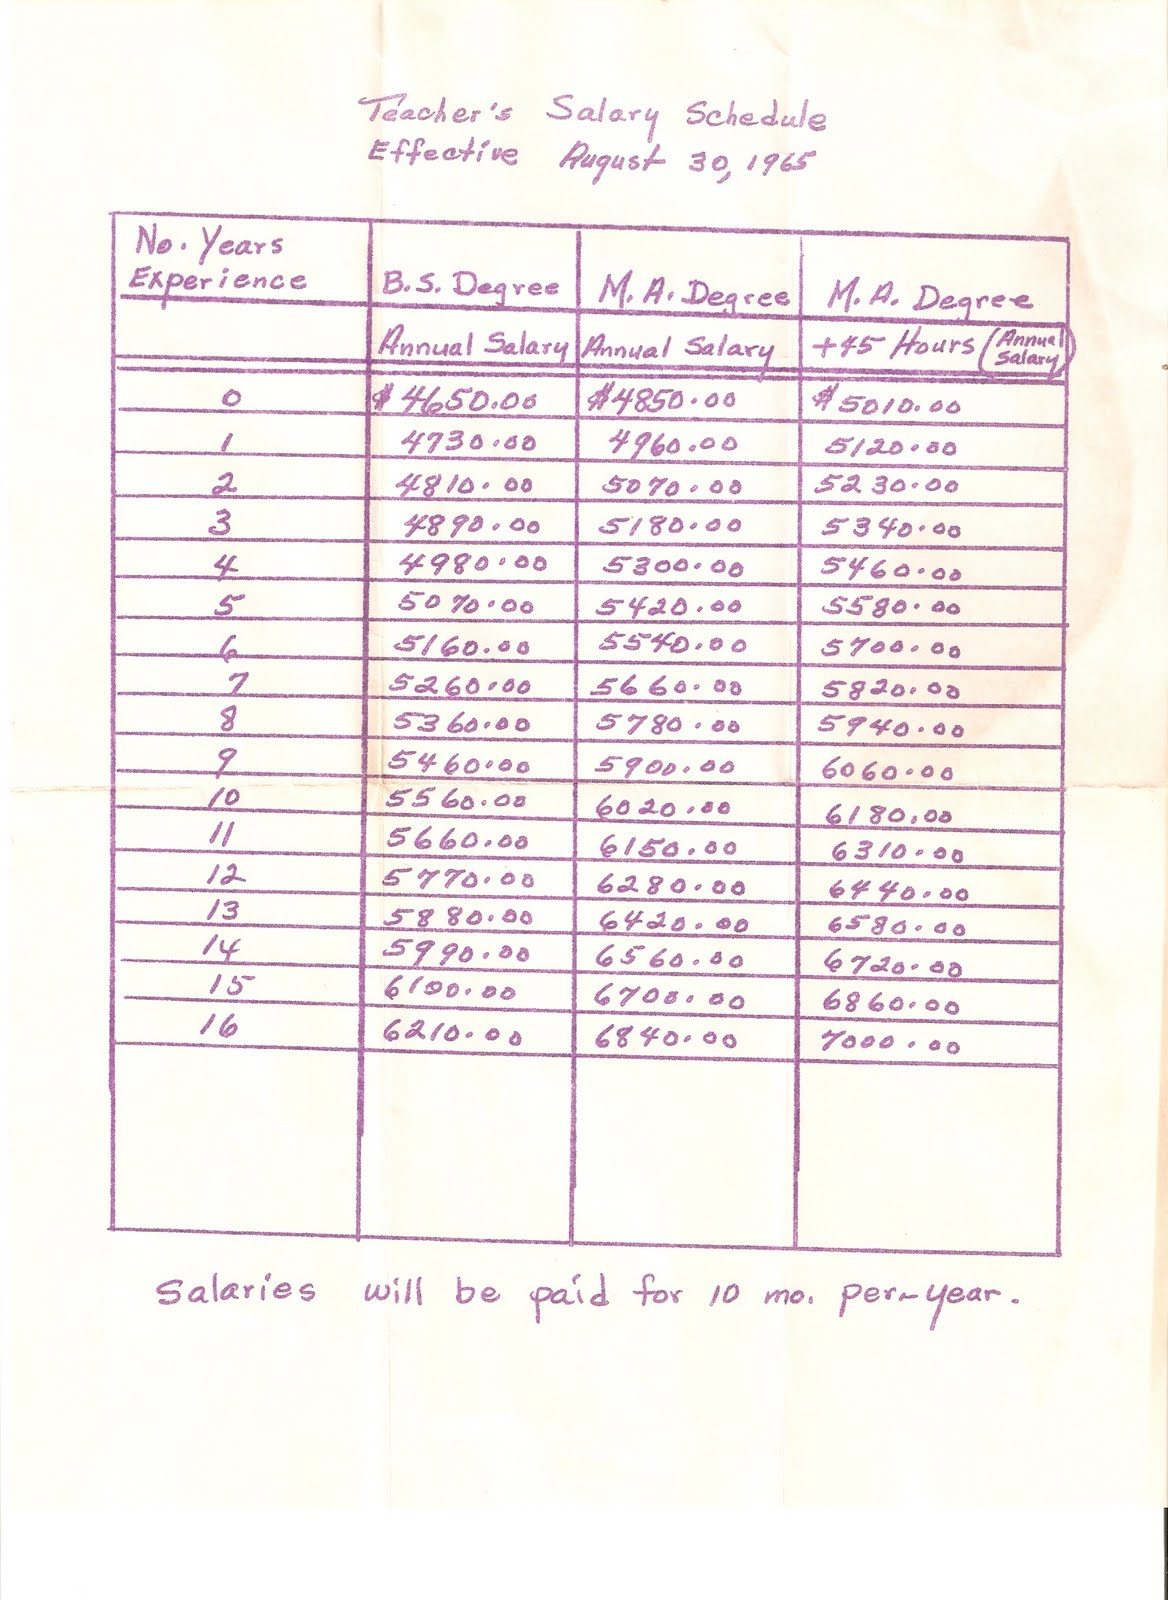 [Teacher's+Salary+Schedule+-+Kingsport+City+Schools+1965.jpg]